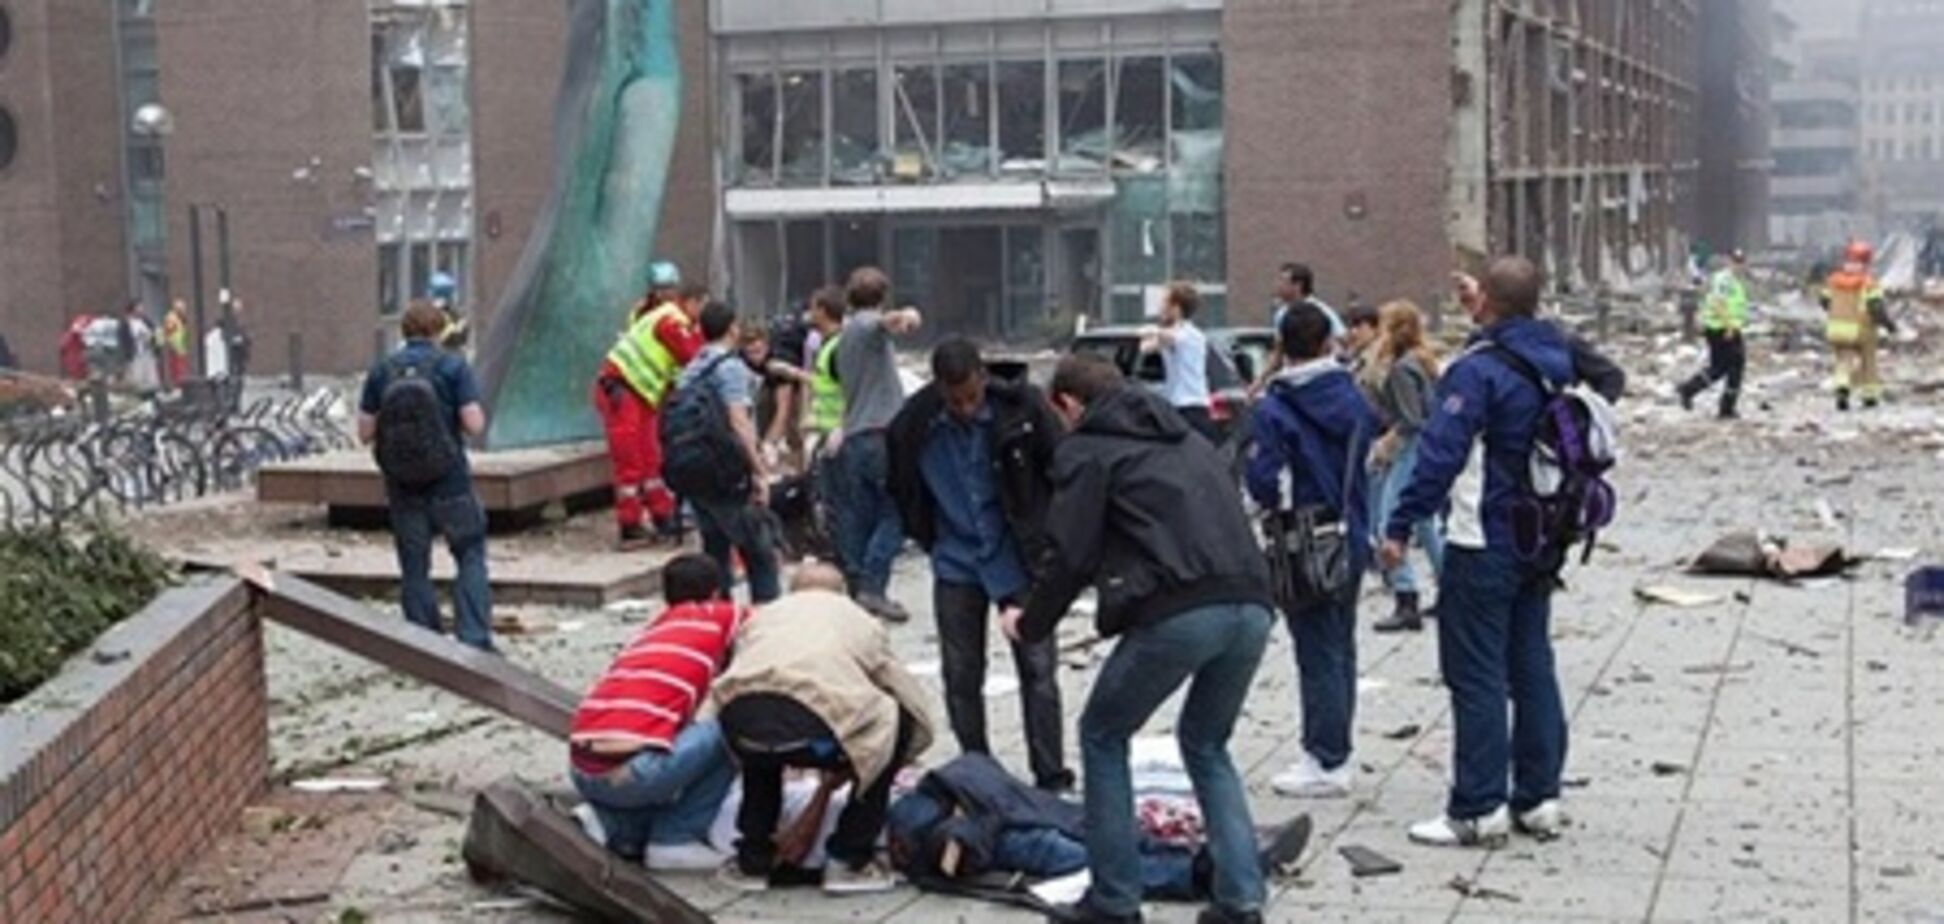 Поліція Норвегії знизила кількість жертв подвійного теракту